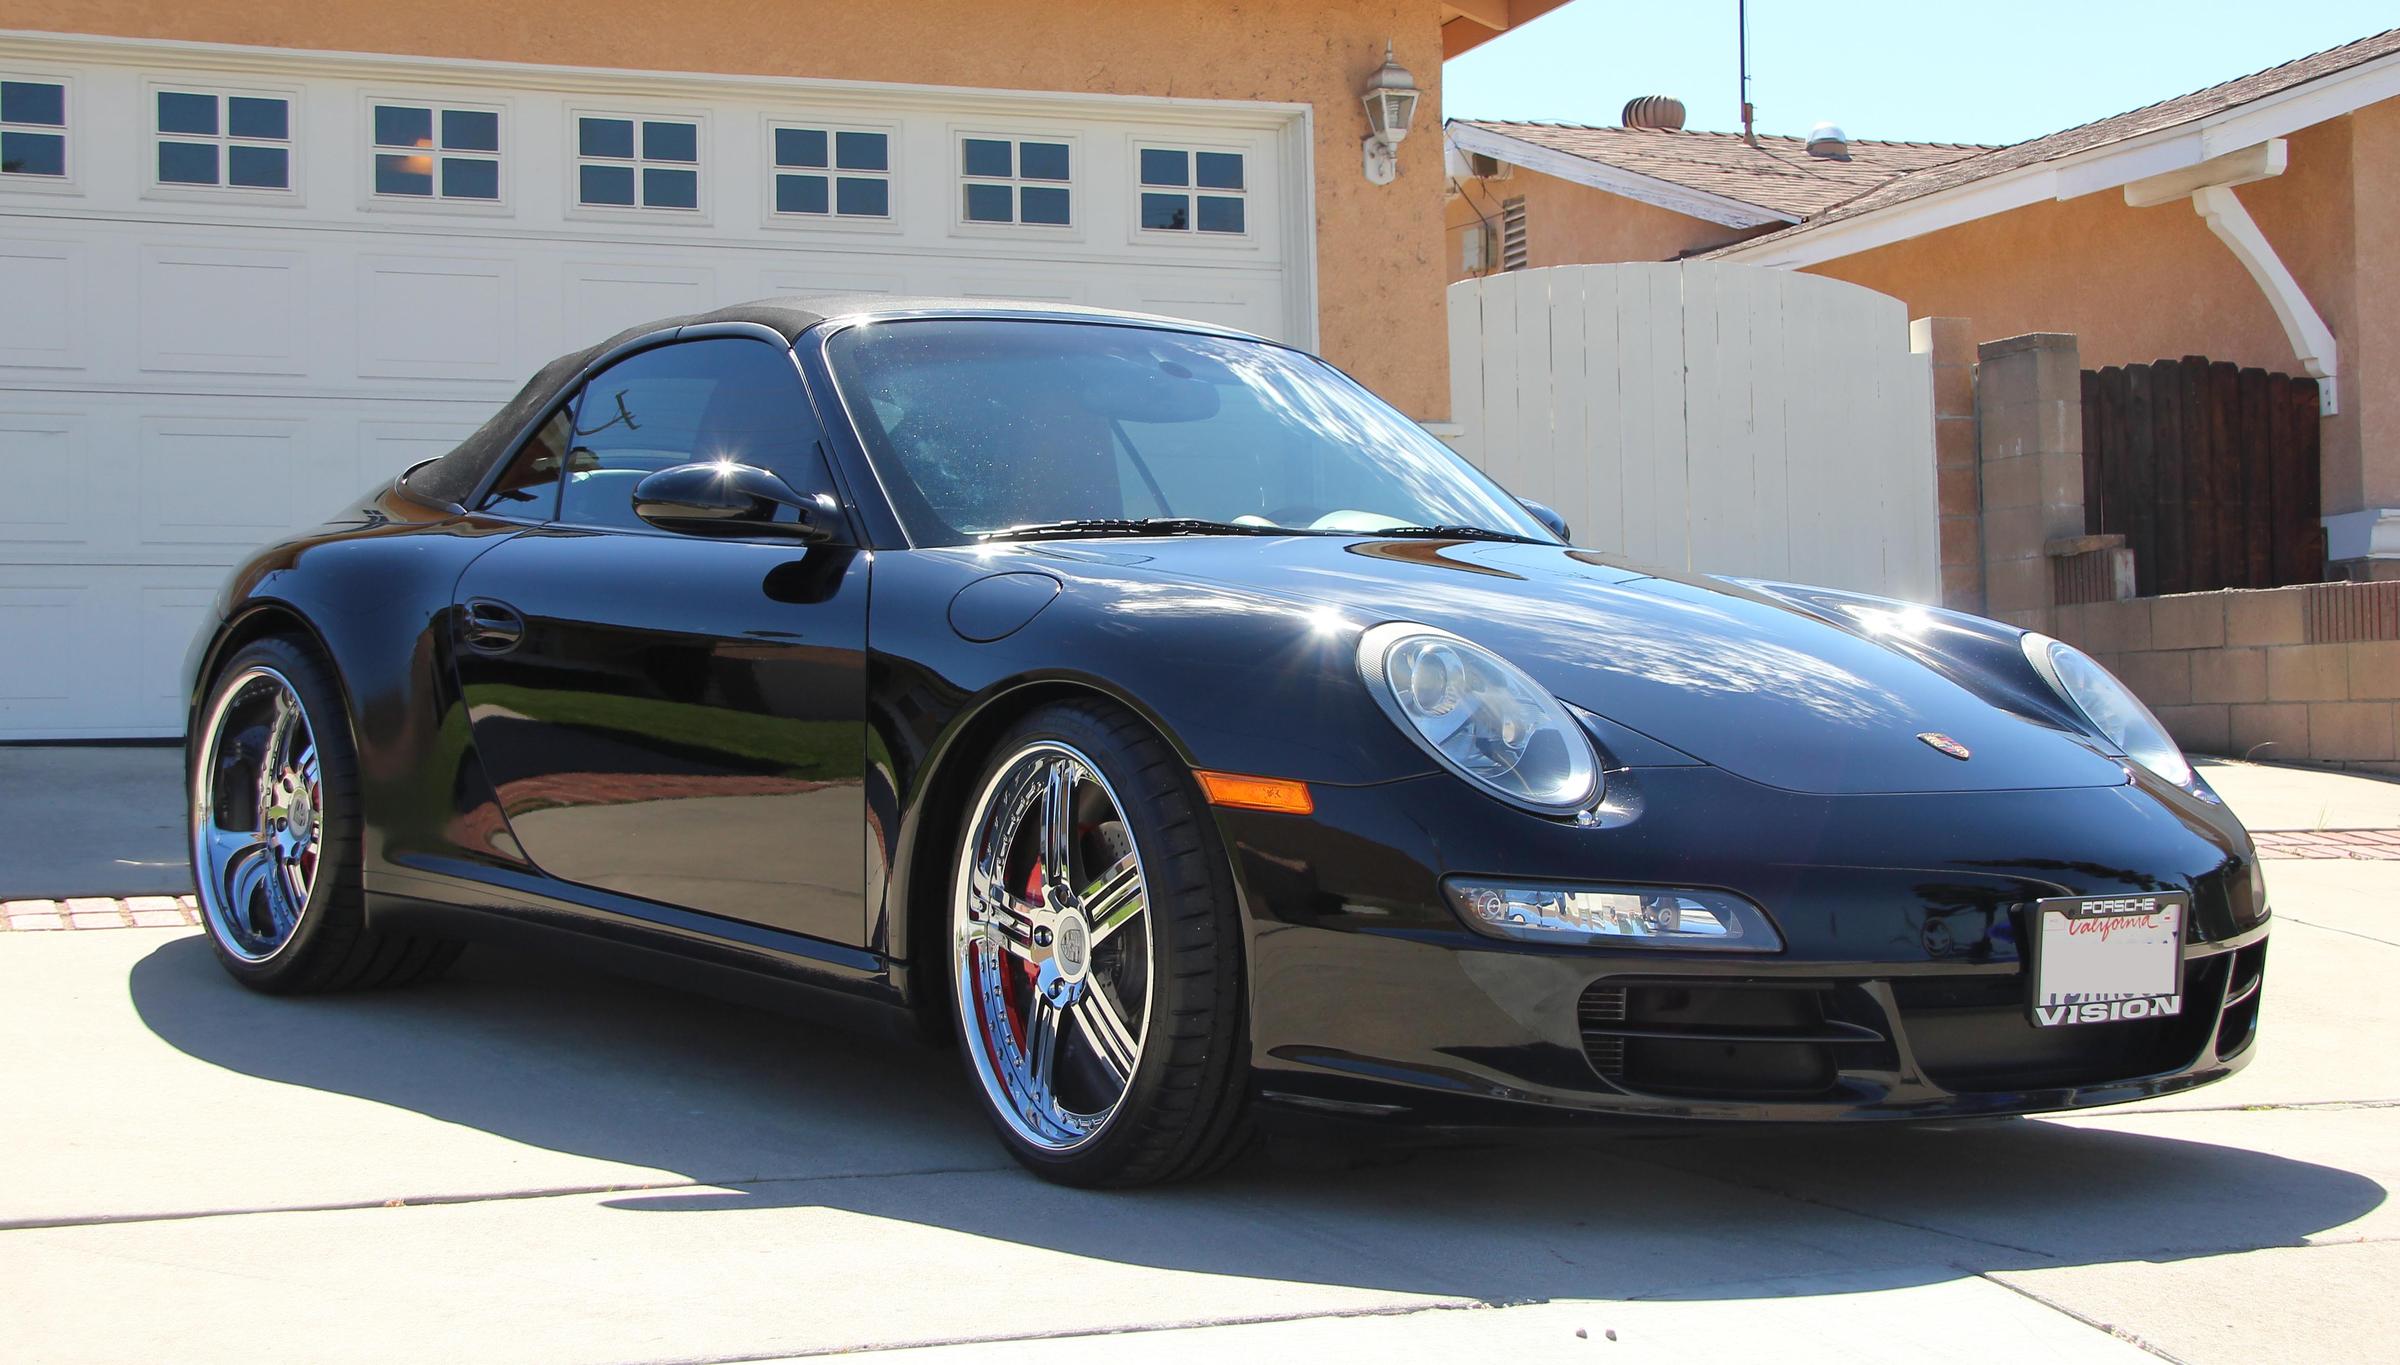 Porsche 911 Carrera 4S with custom Porsche rims 2006 - price reduced! -  Rennlist - Porsche Discussion Forums